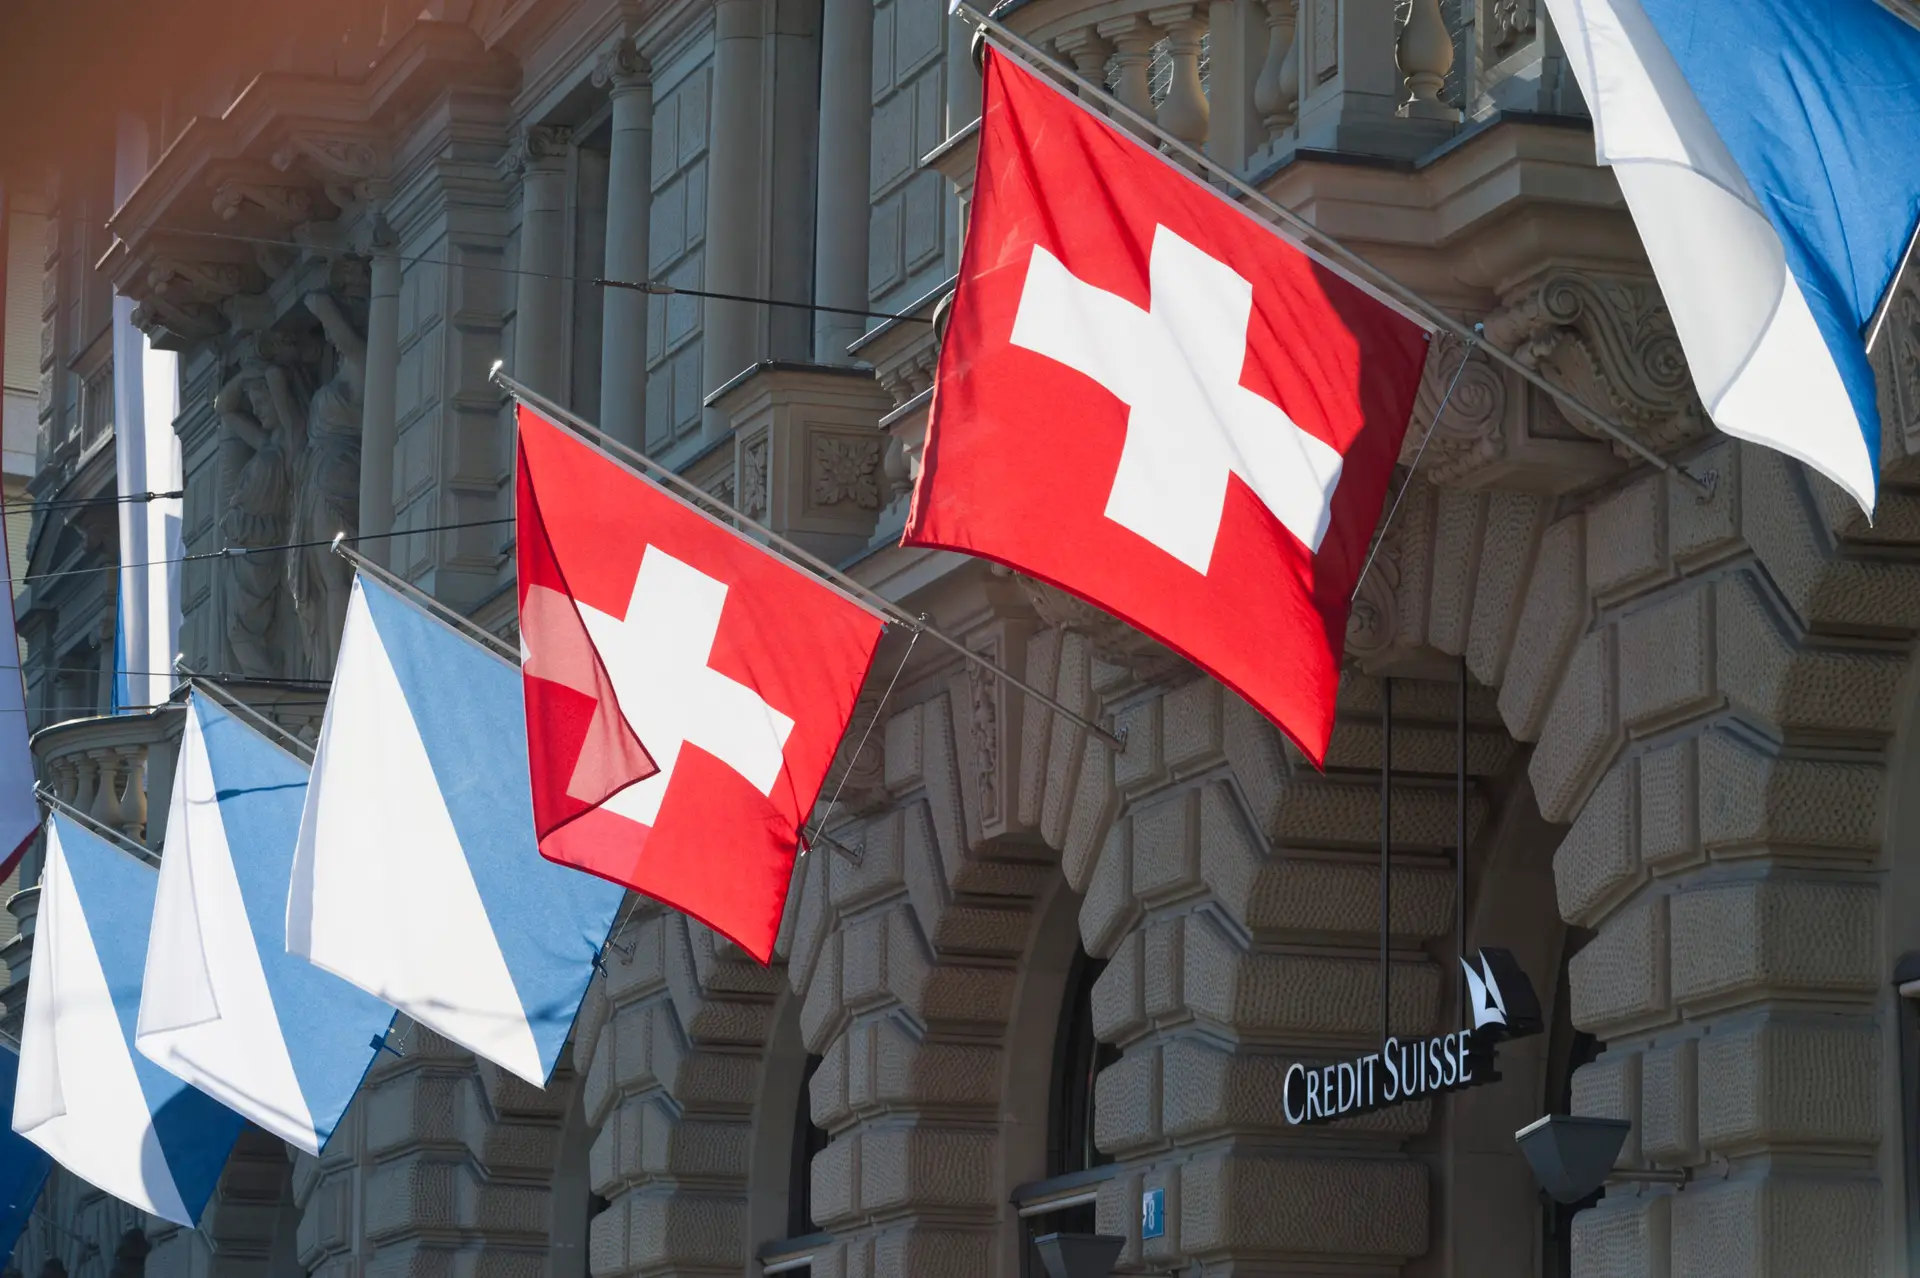 Fim do Credit Suisse é uma noz dura de roer: as peripécias da última assembleia do banco